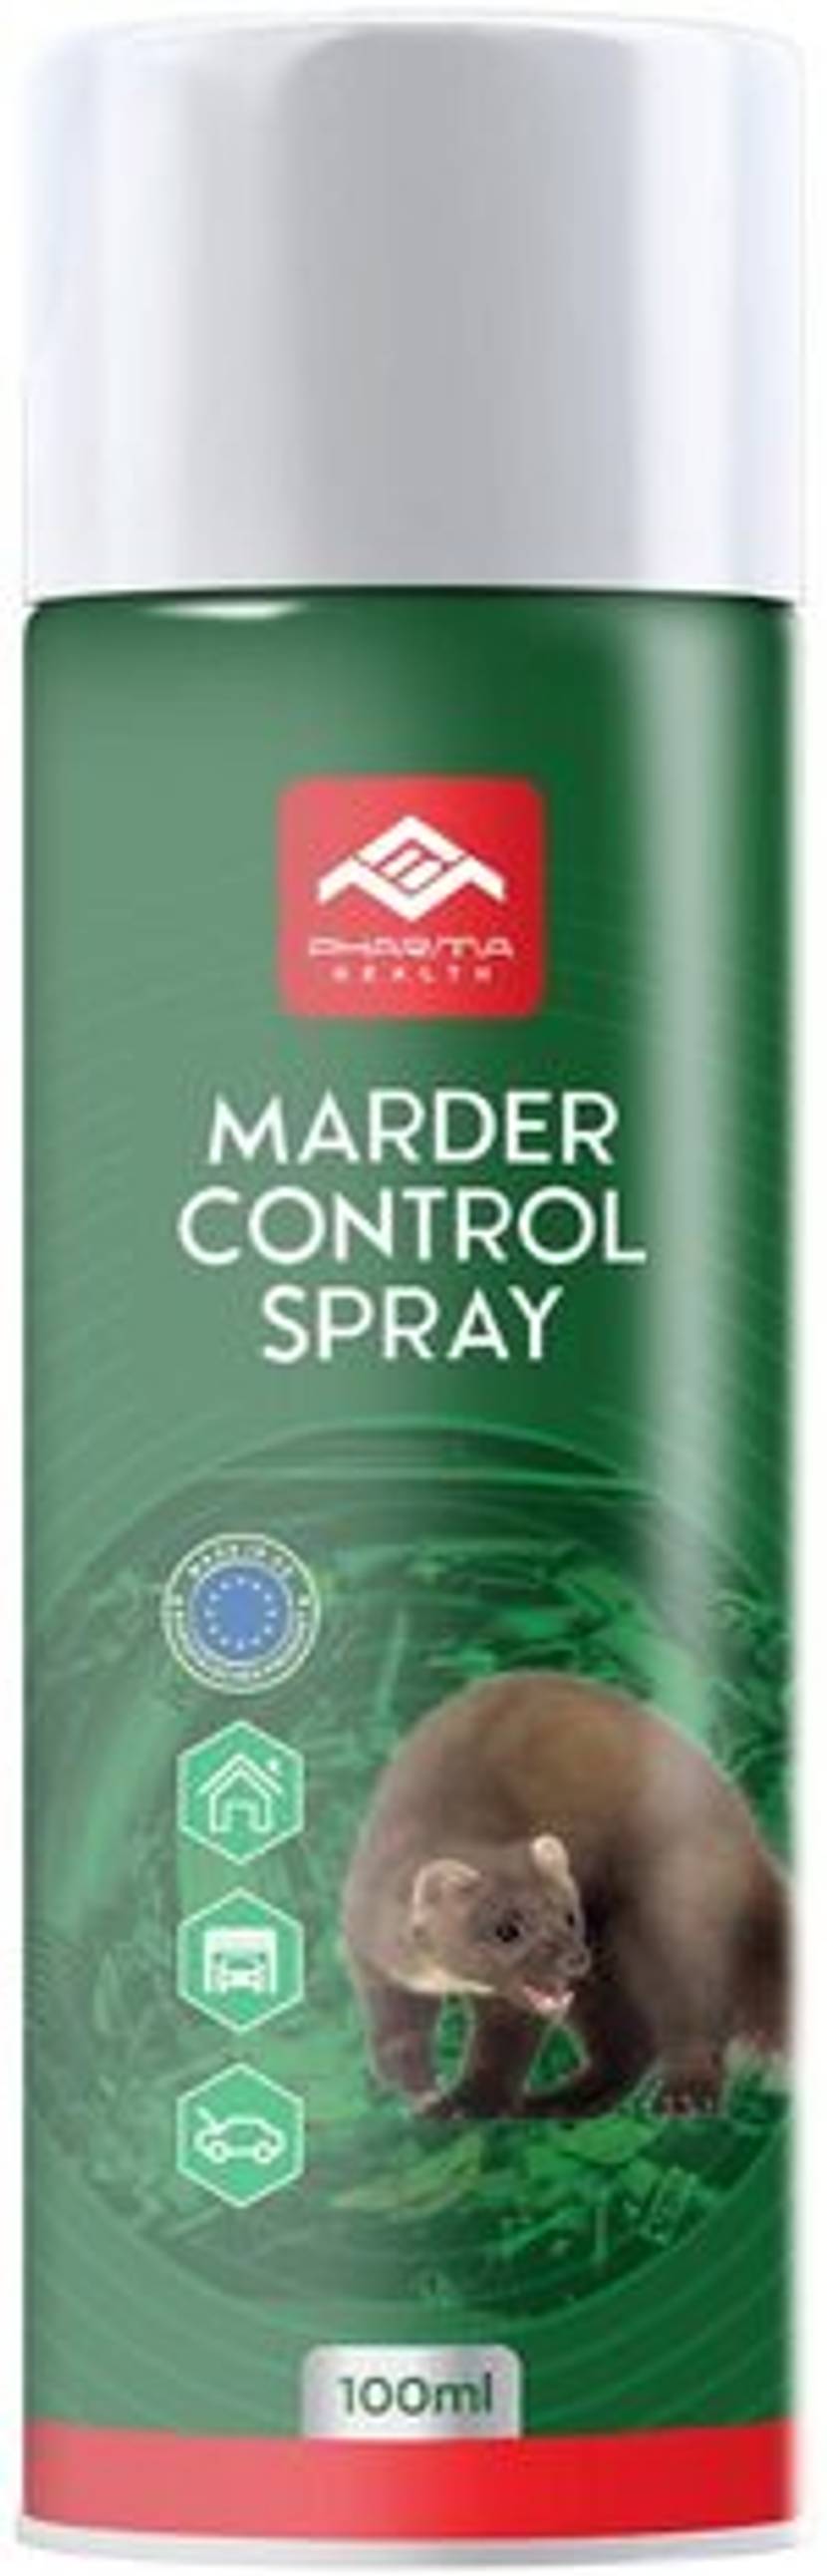 marder-spray-reviews